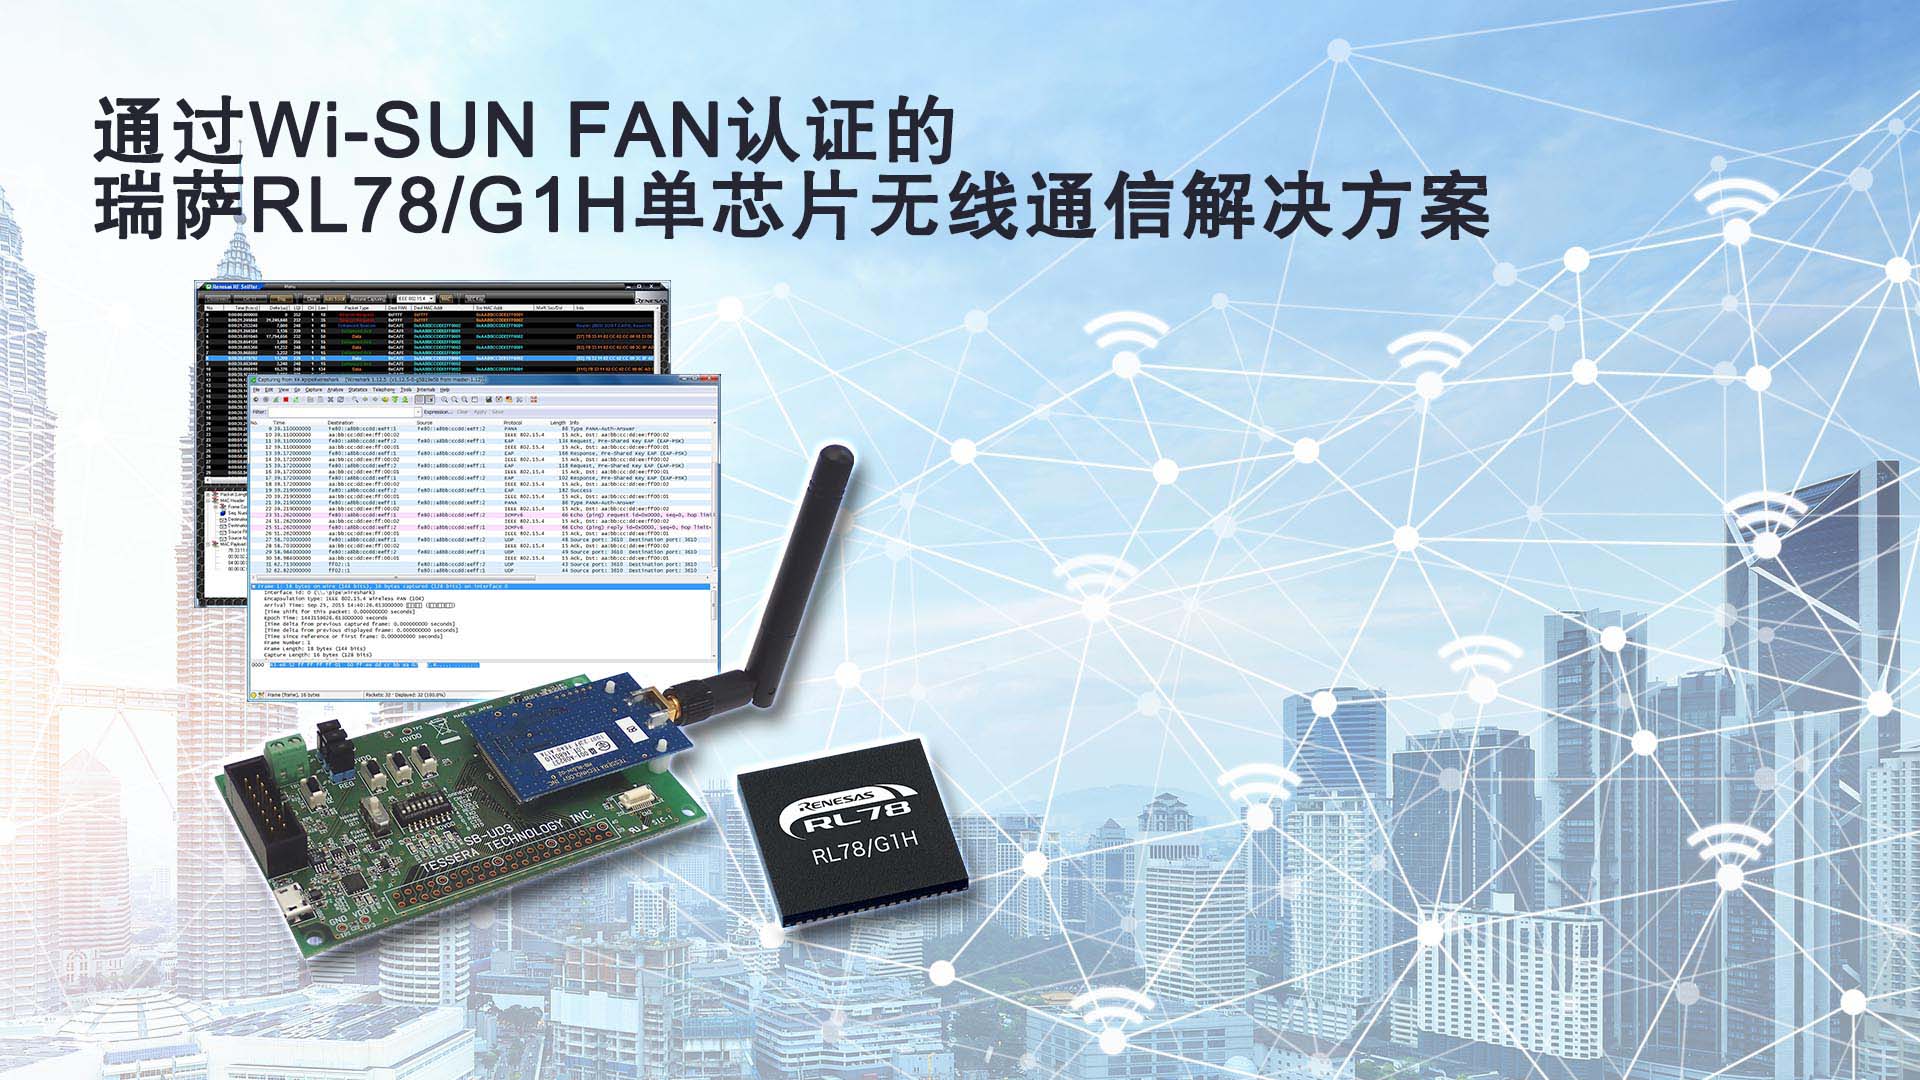 瑞萨电子大力推广支持无线Wi-SUN FAN协议的 RL78/G1H单芯片解决方案